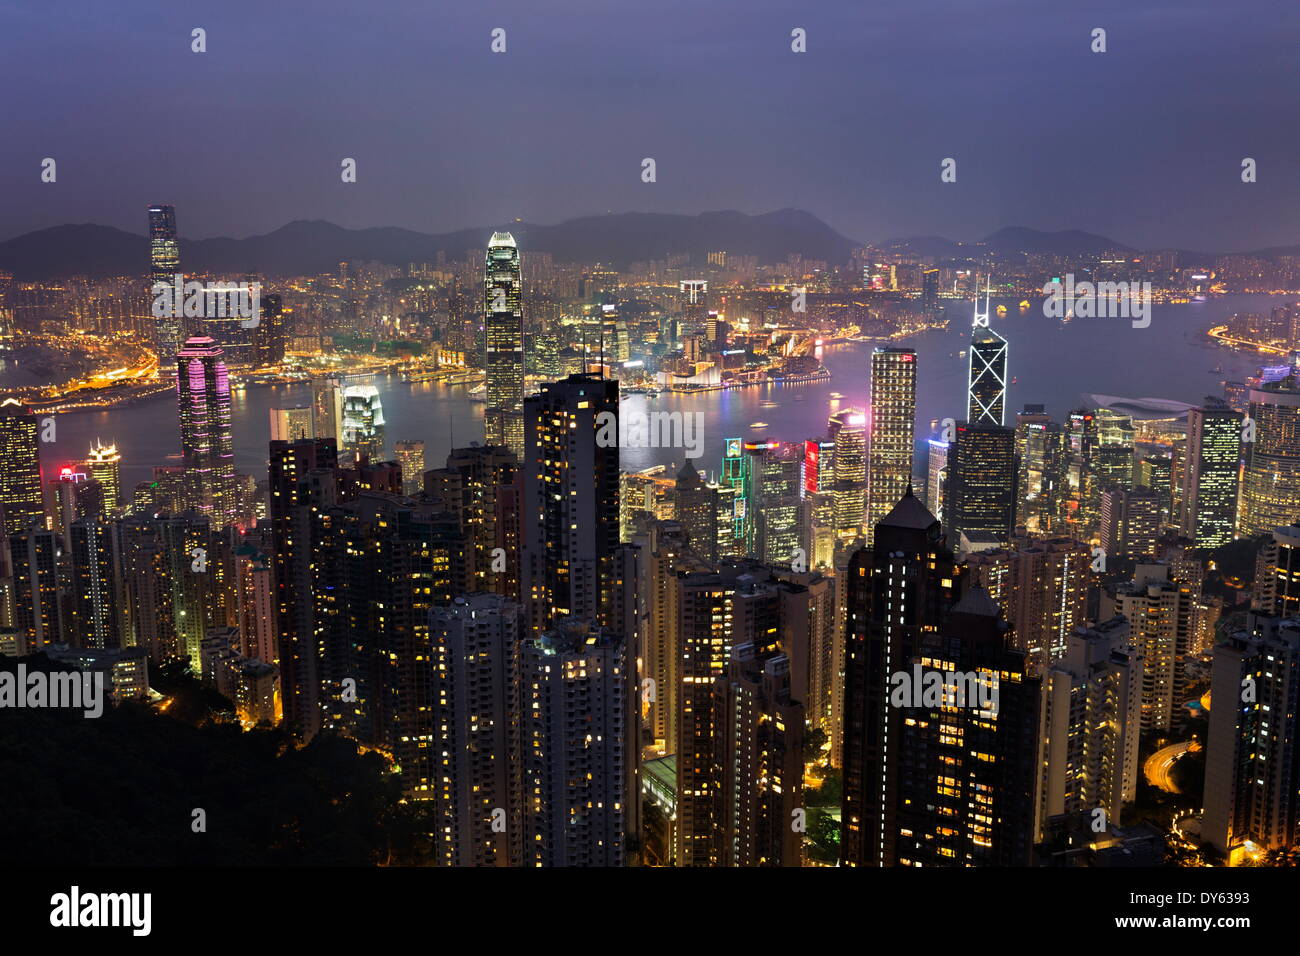 View over Hong Kong from The Peak, Hong Kong, China, Asia Stock Photo